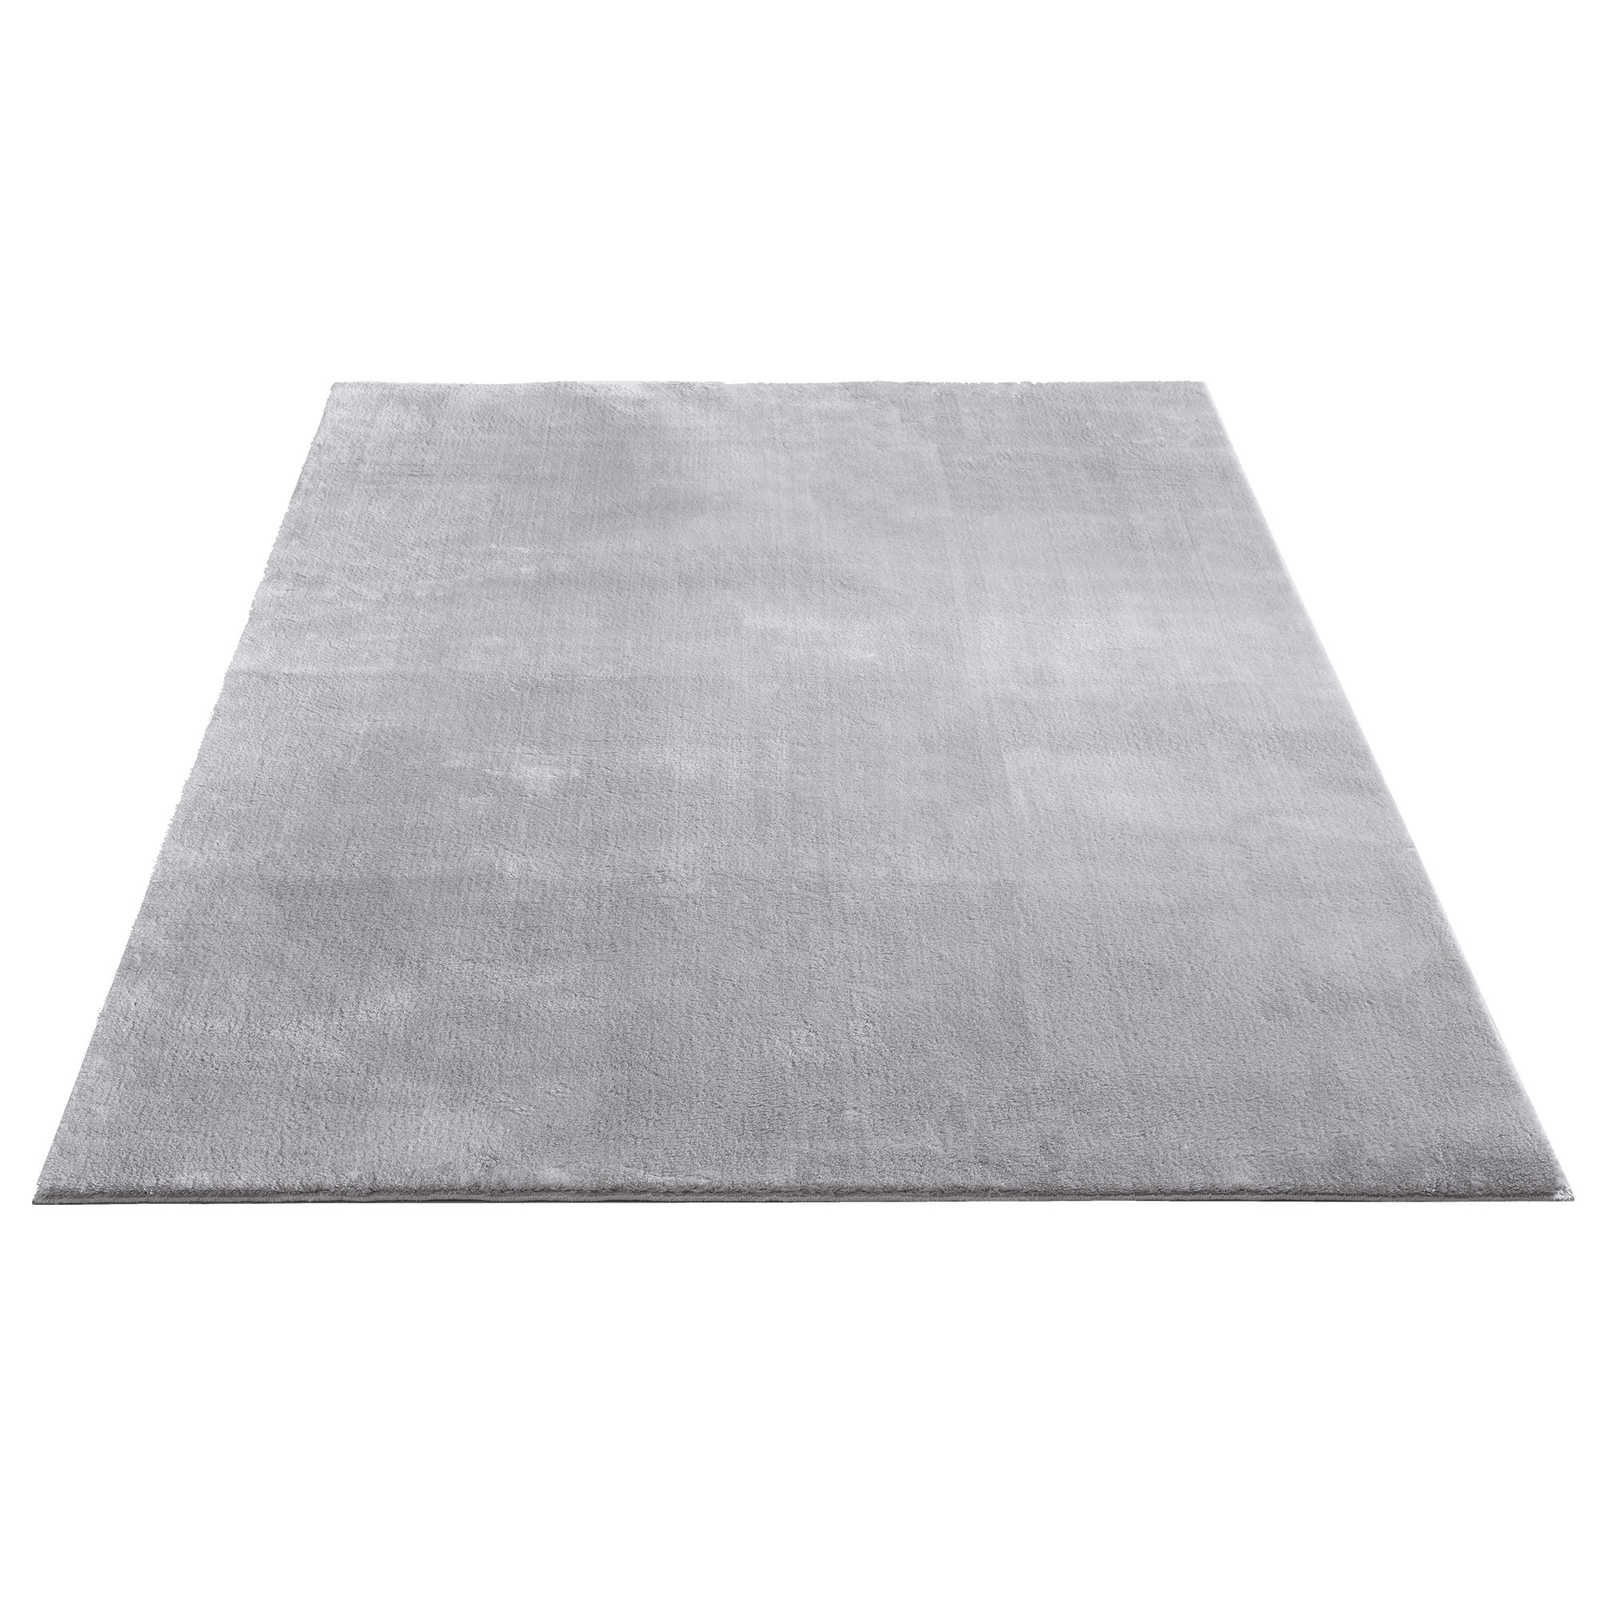 Fijn hoogpolig tapijt in grijs - 340 x 240 cm
